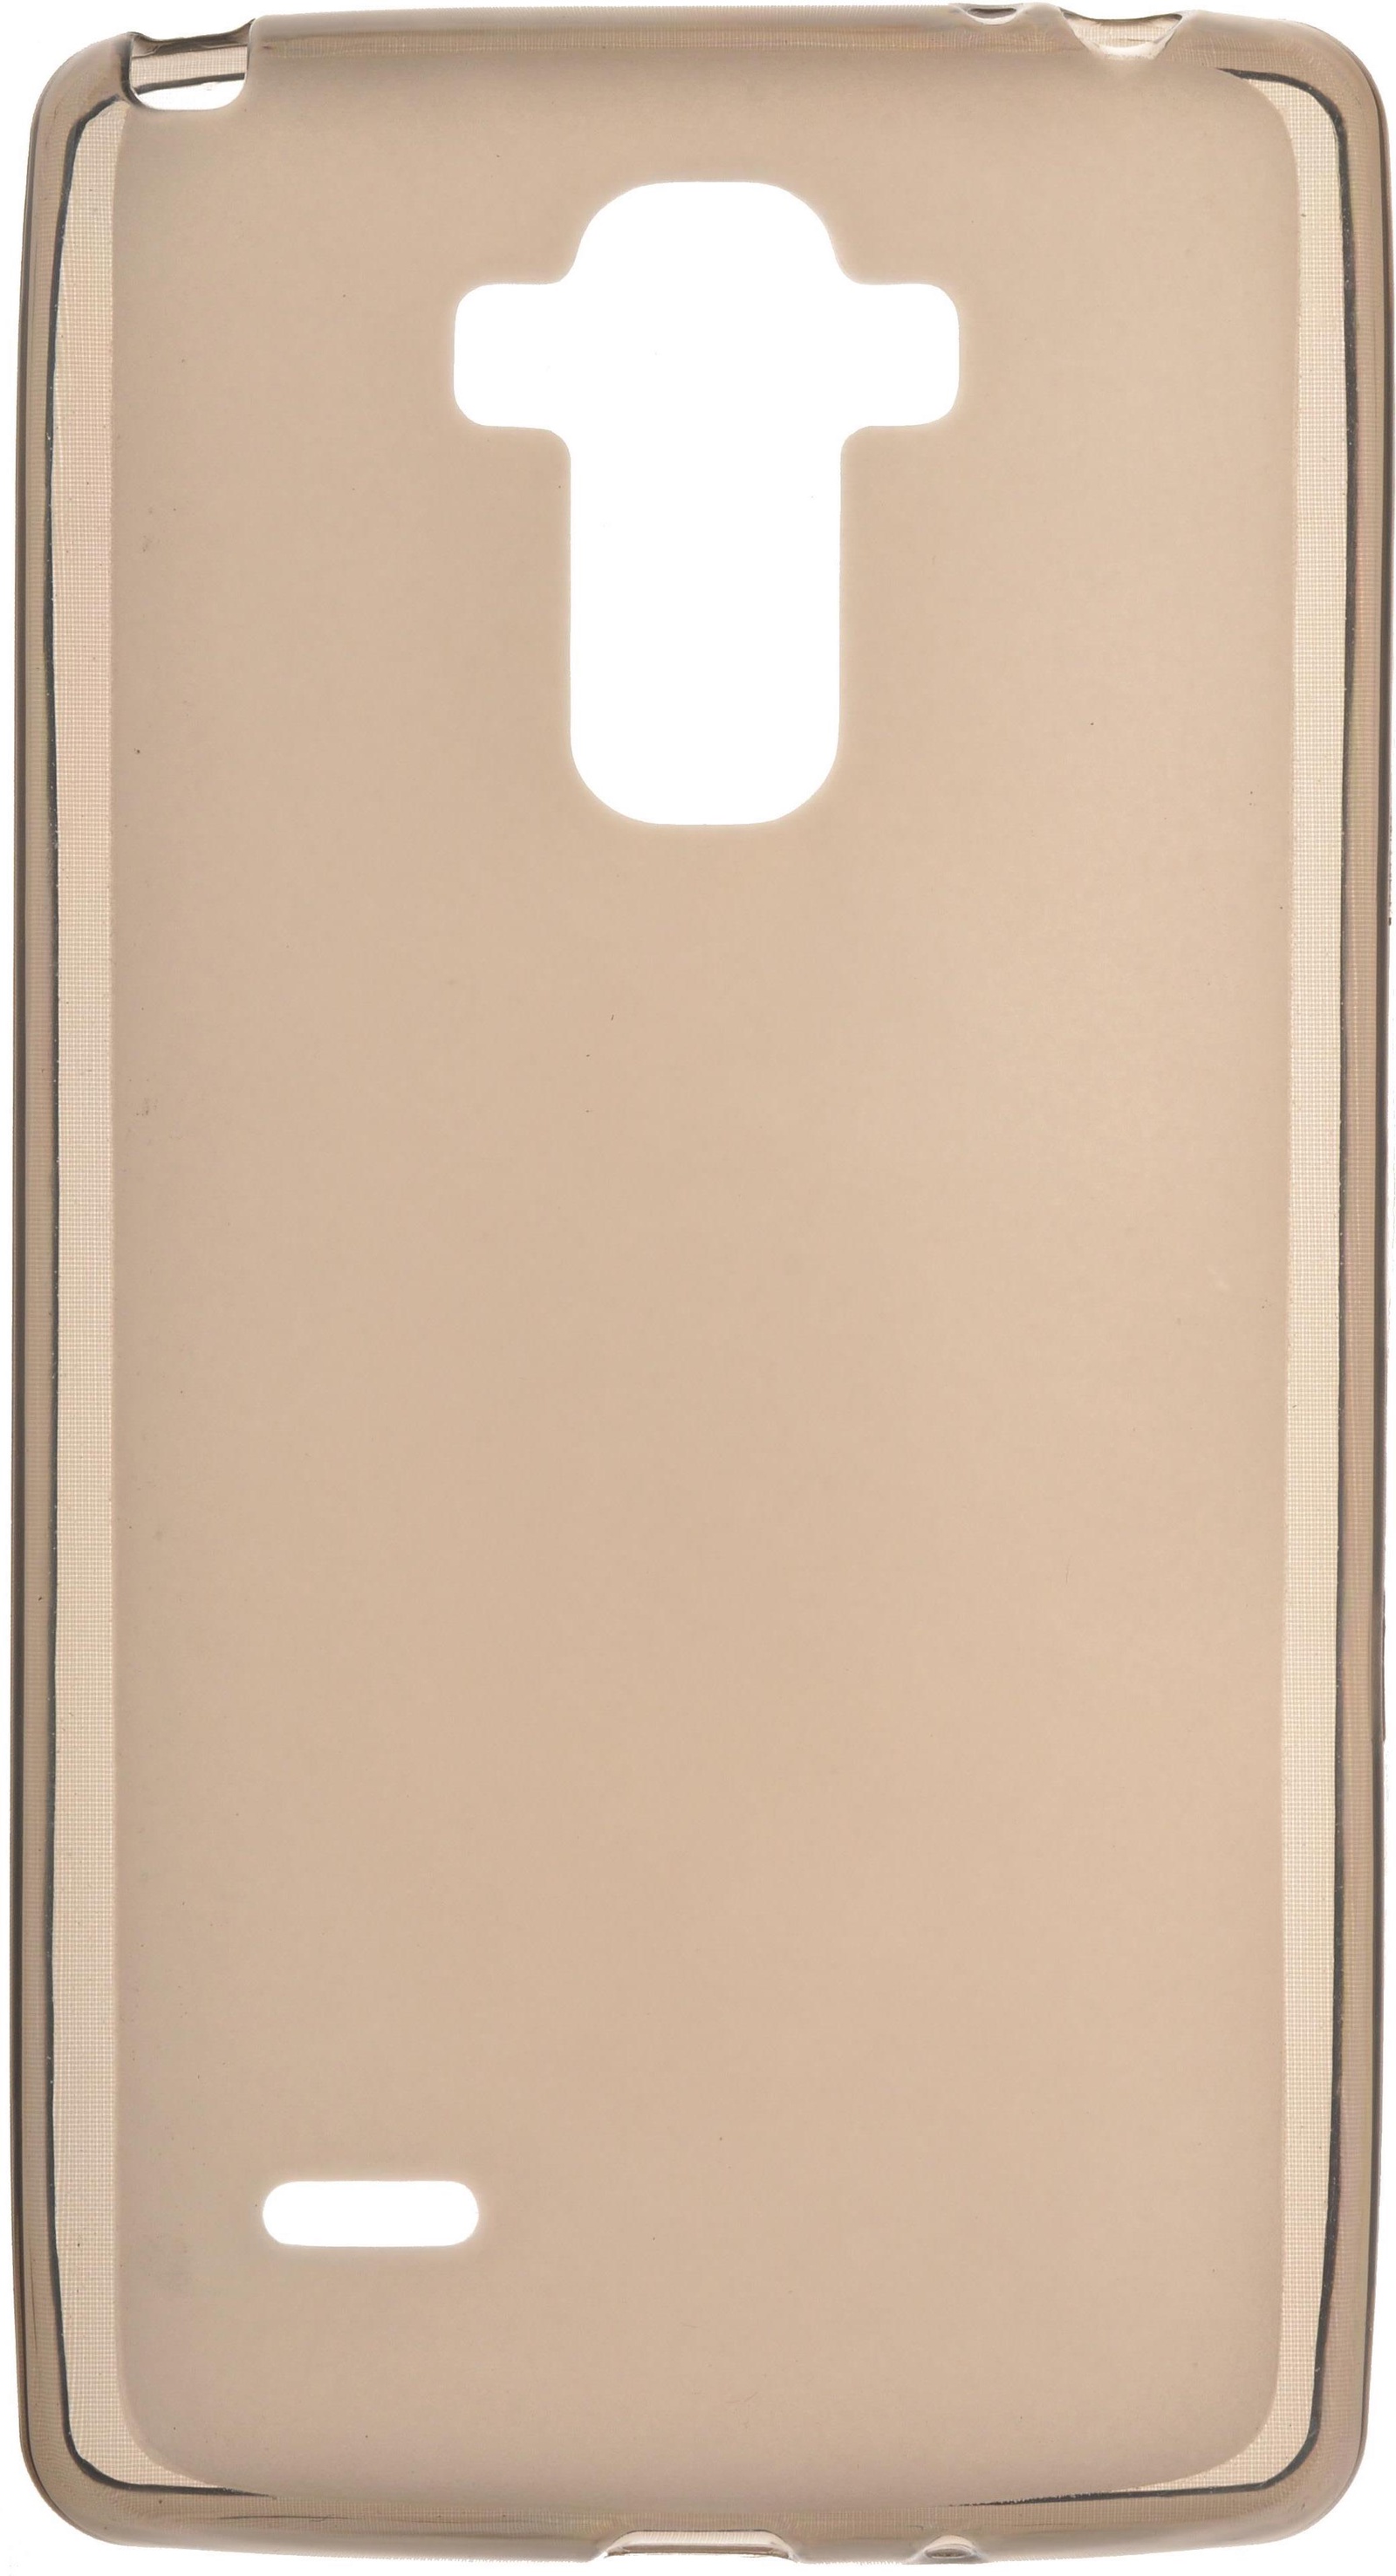 Чехол для сотового телефона skinBOX Silicone, 4630042525016, коричневый